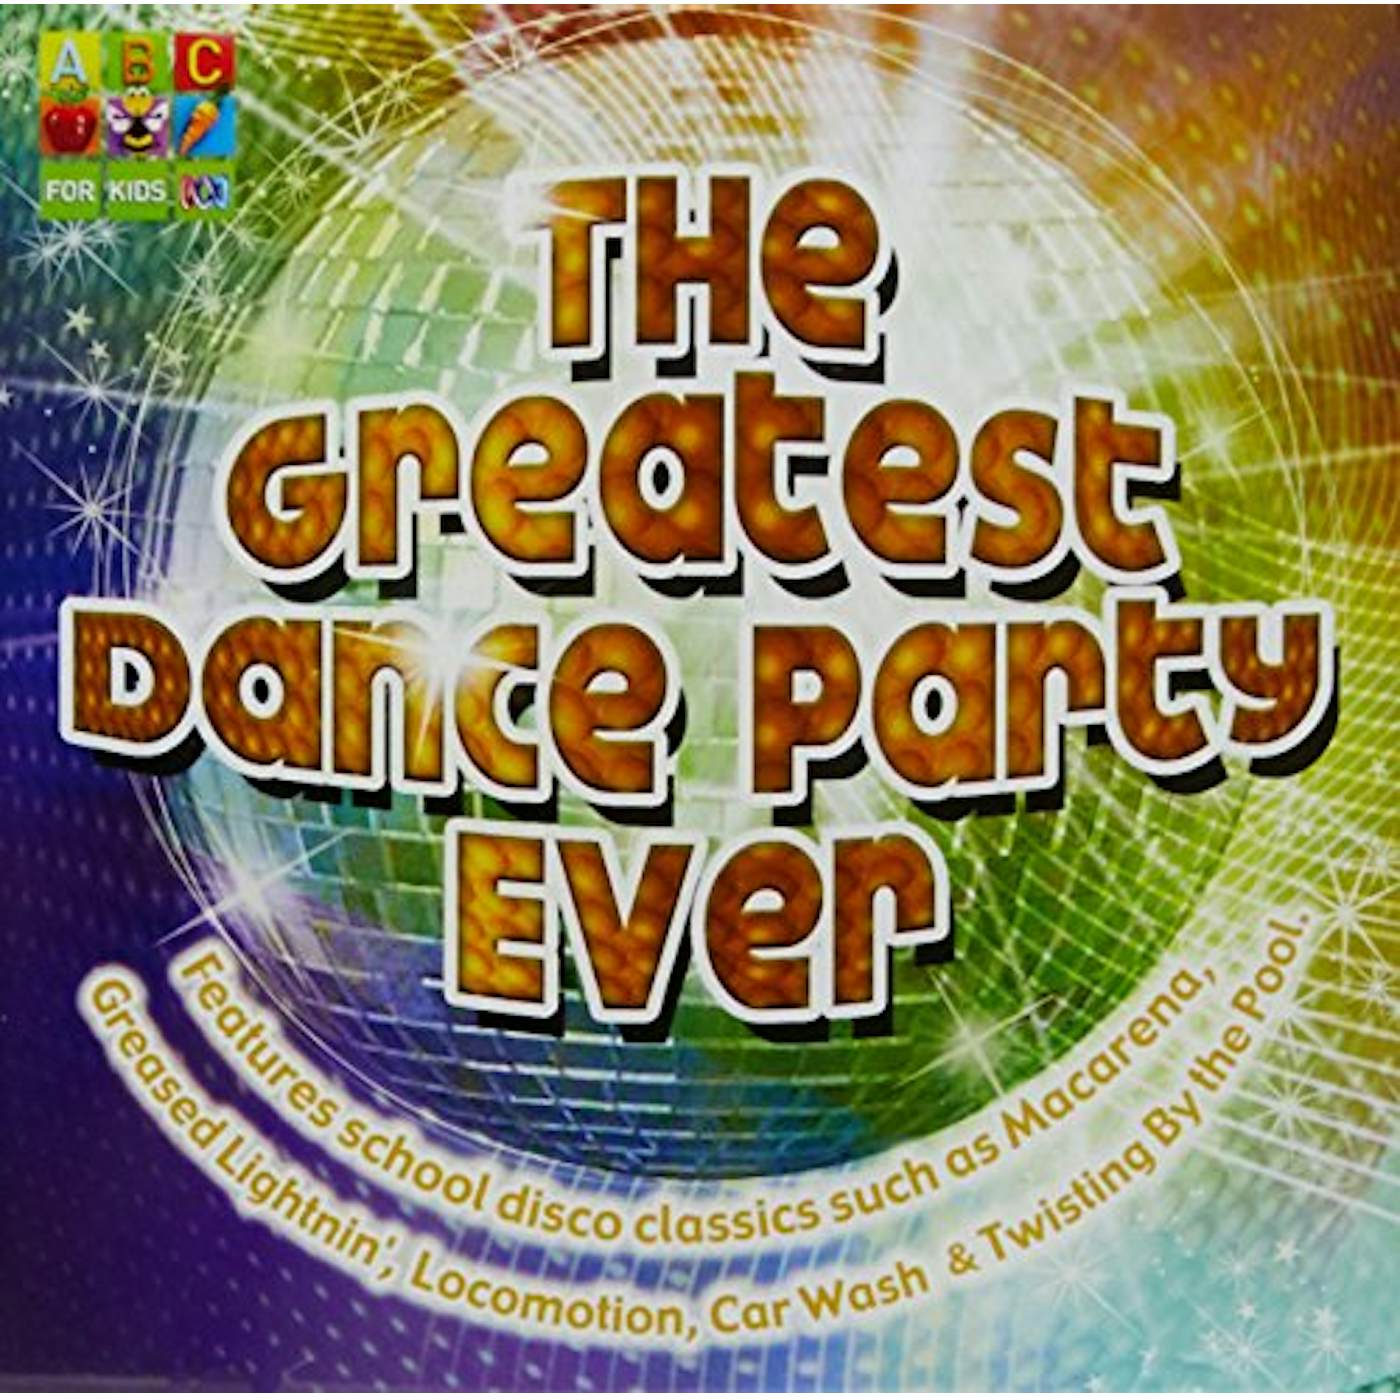 John Kane GREATEST DANCE PARTY EVER CD